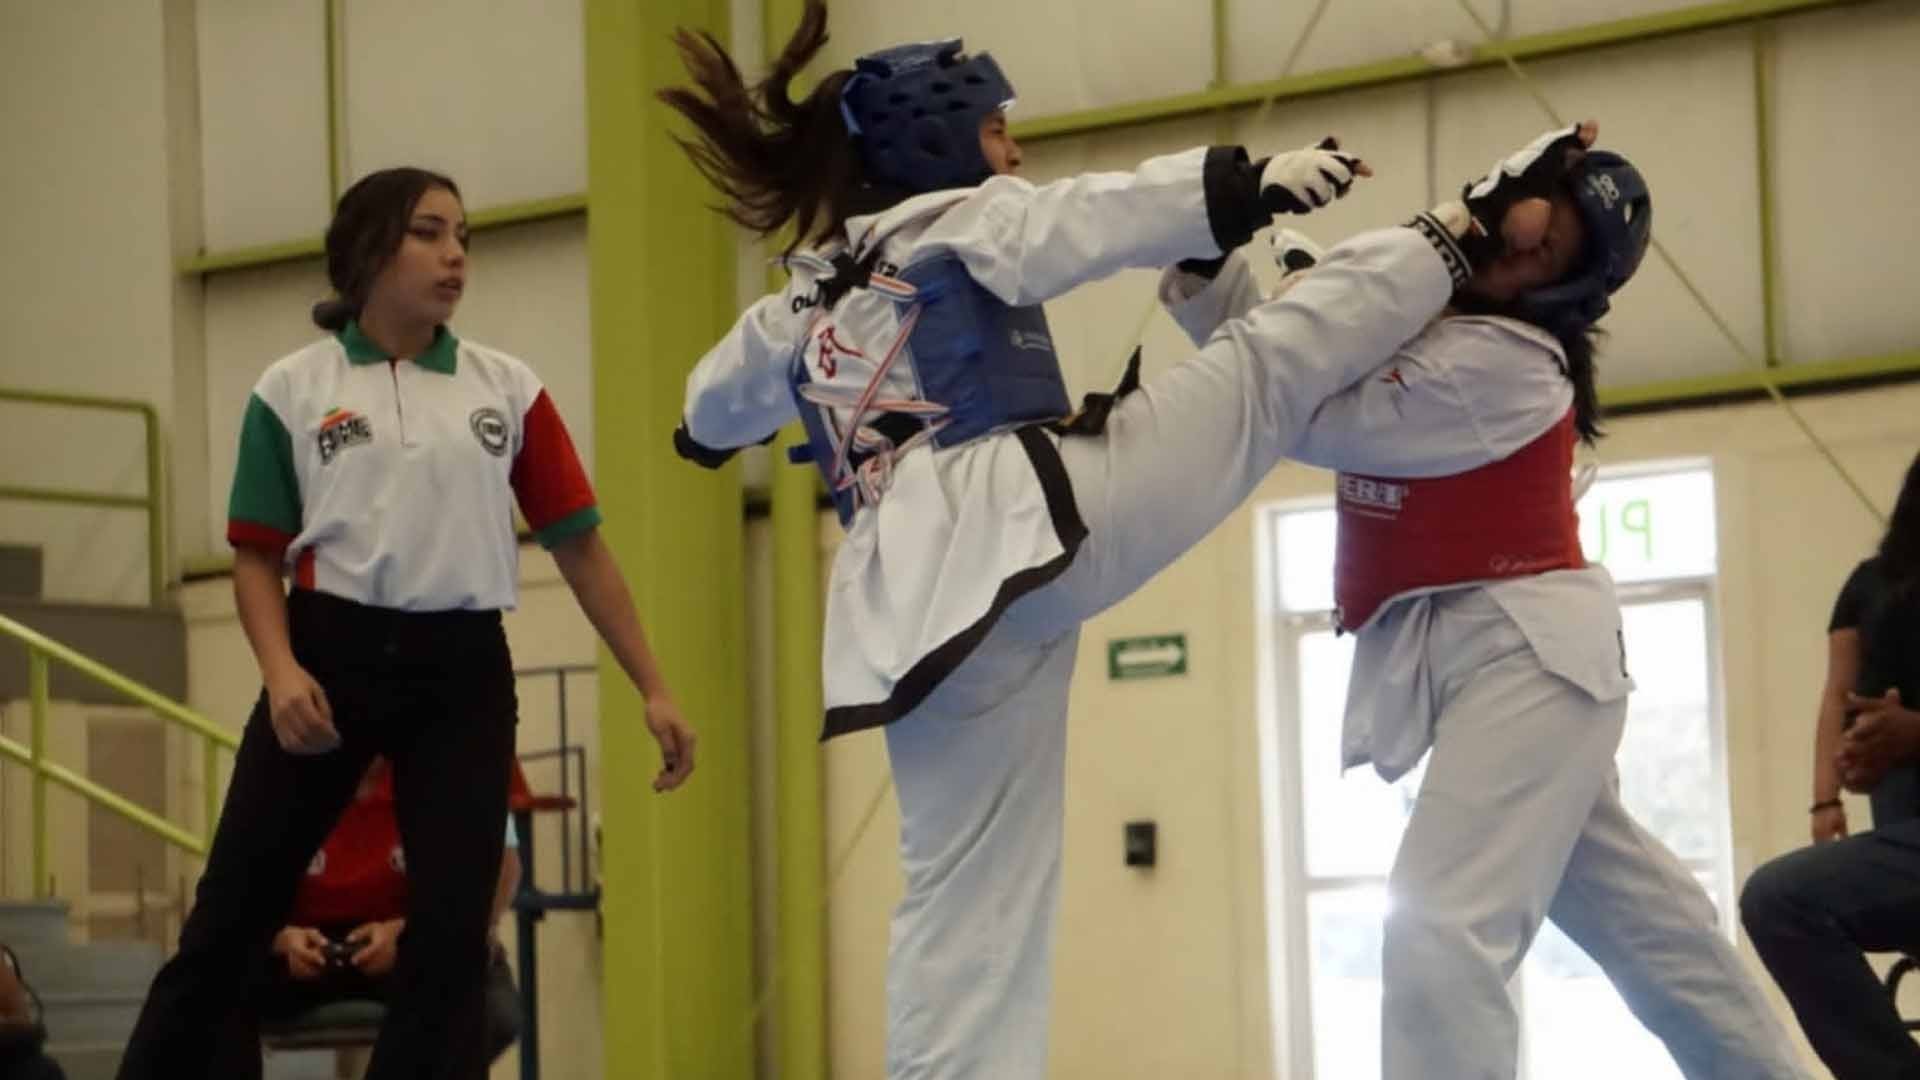 Representante de Borregos Laguna en Taekwondo consigue primer lugar